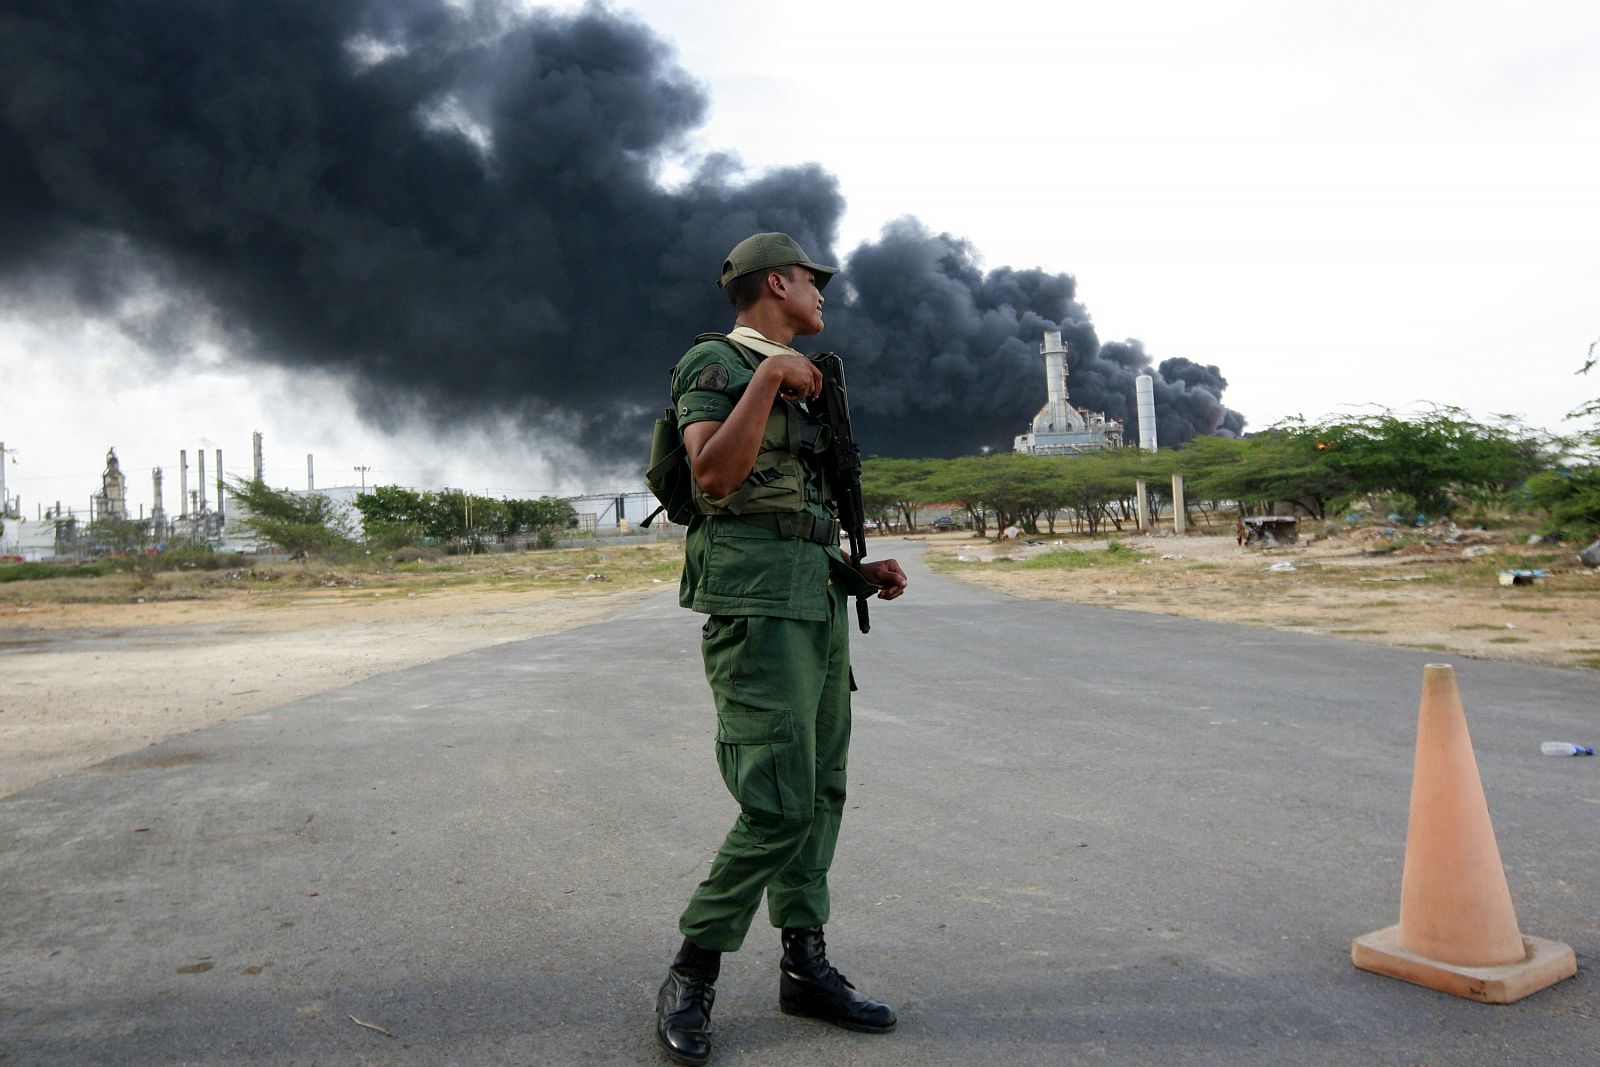 Un soldado monta guardia frente a la refinería de Amuay, cuyos tanques están ardiendo, el 28 de agosto